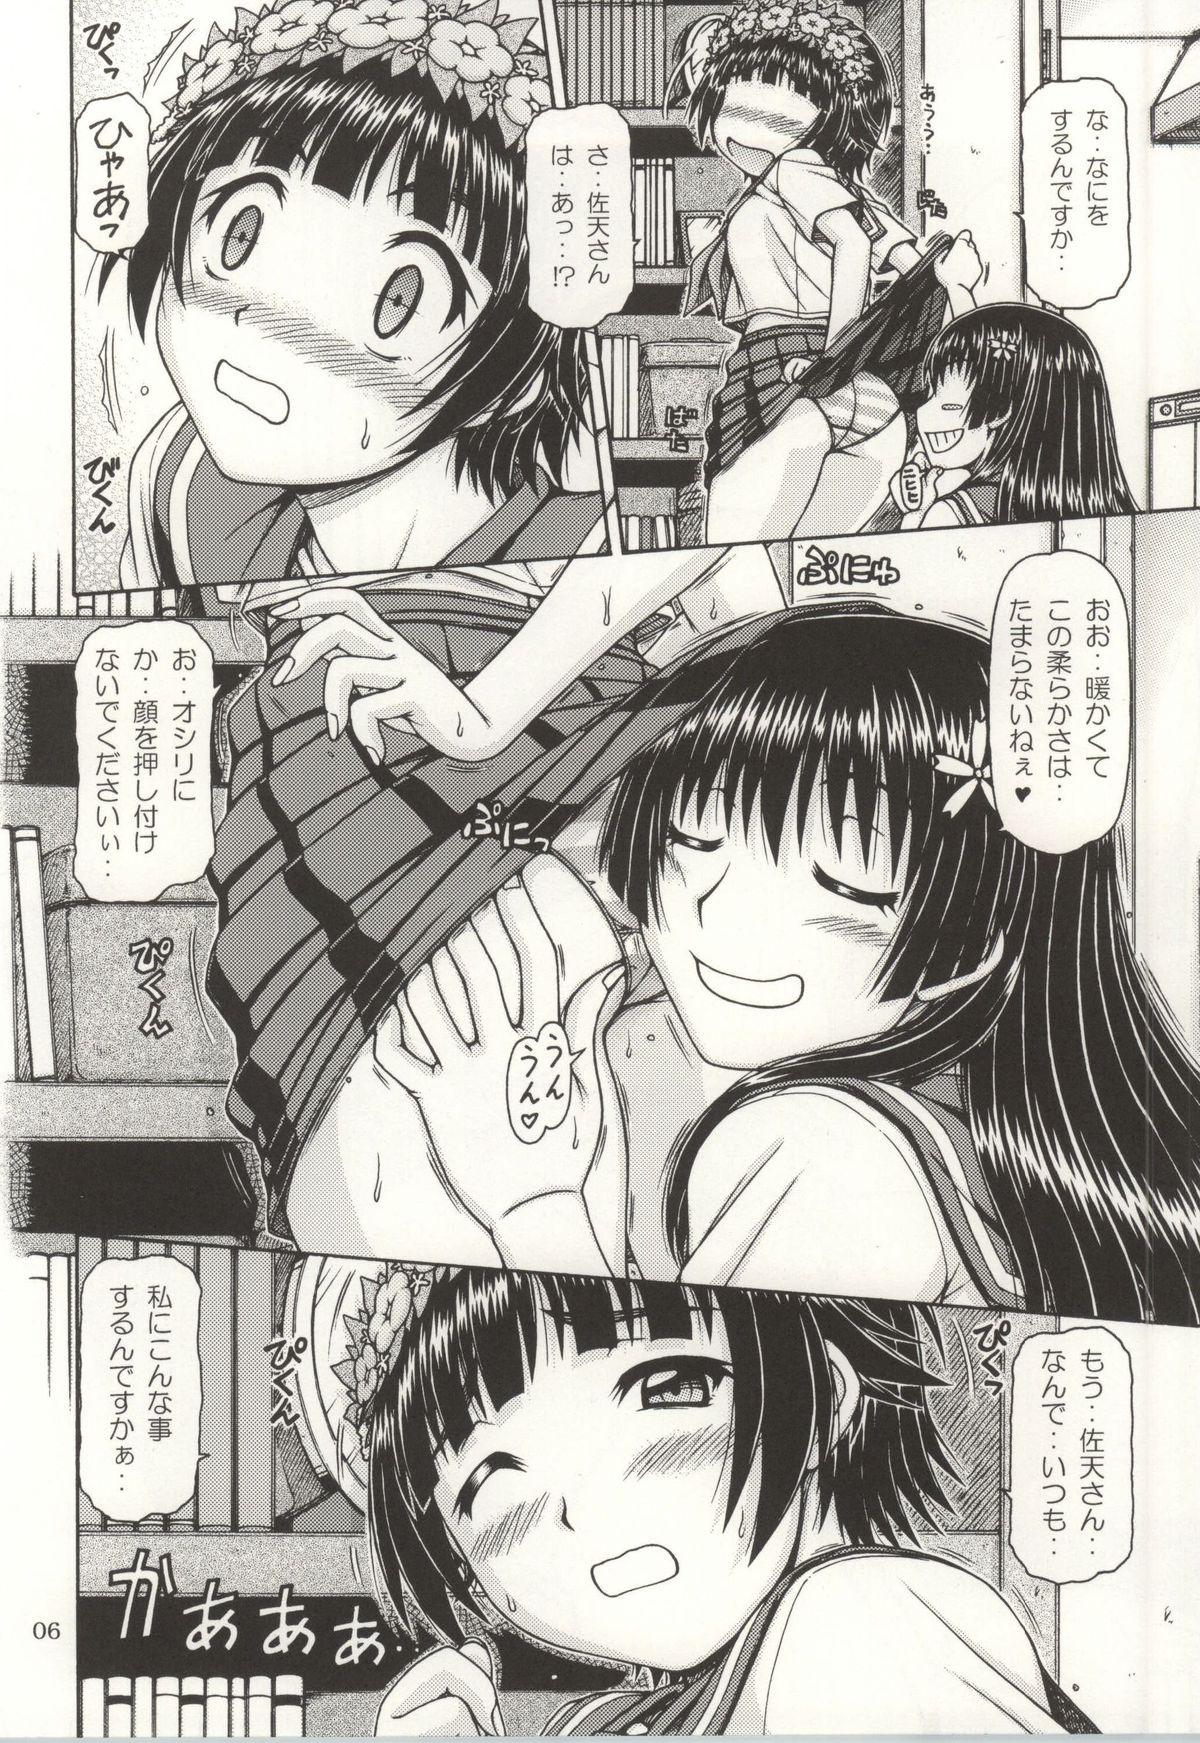 Blowjob Contest ONE-SEVEN+ Vol.01 - Toaru kagaku no railgun Toaru majutsu no index Glasses - Page 4